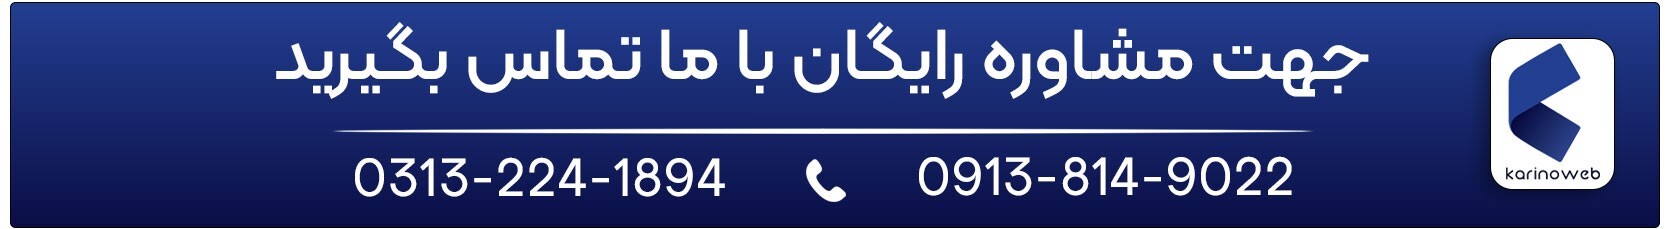 معرفی برترین شرکت های حوزه دیجیتال مارکتینگ در ایران